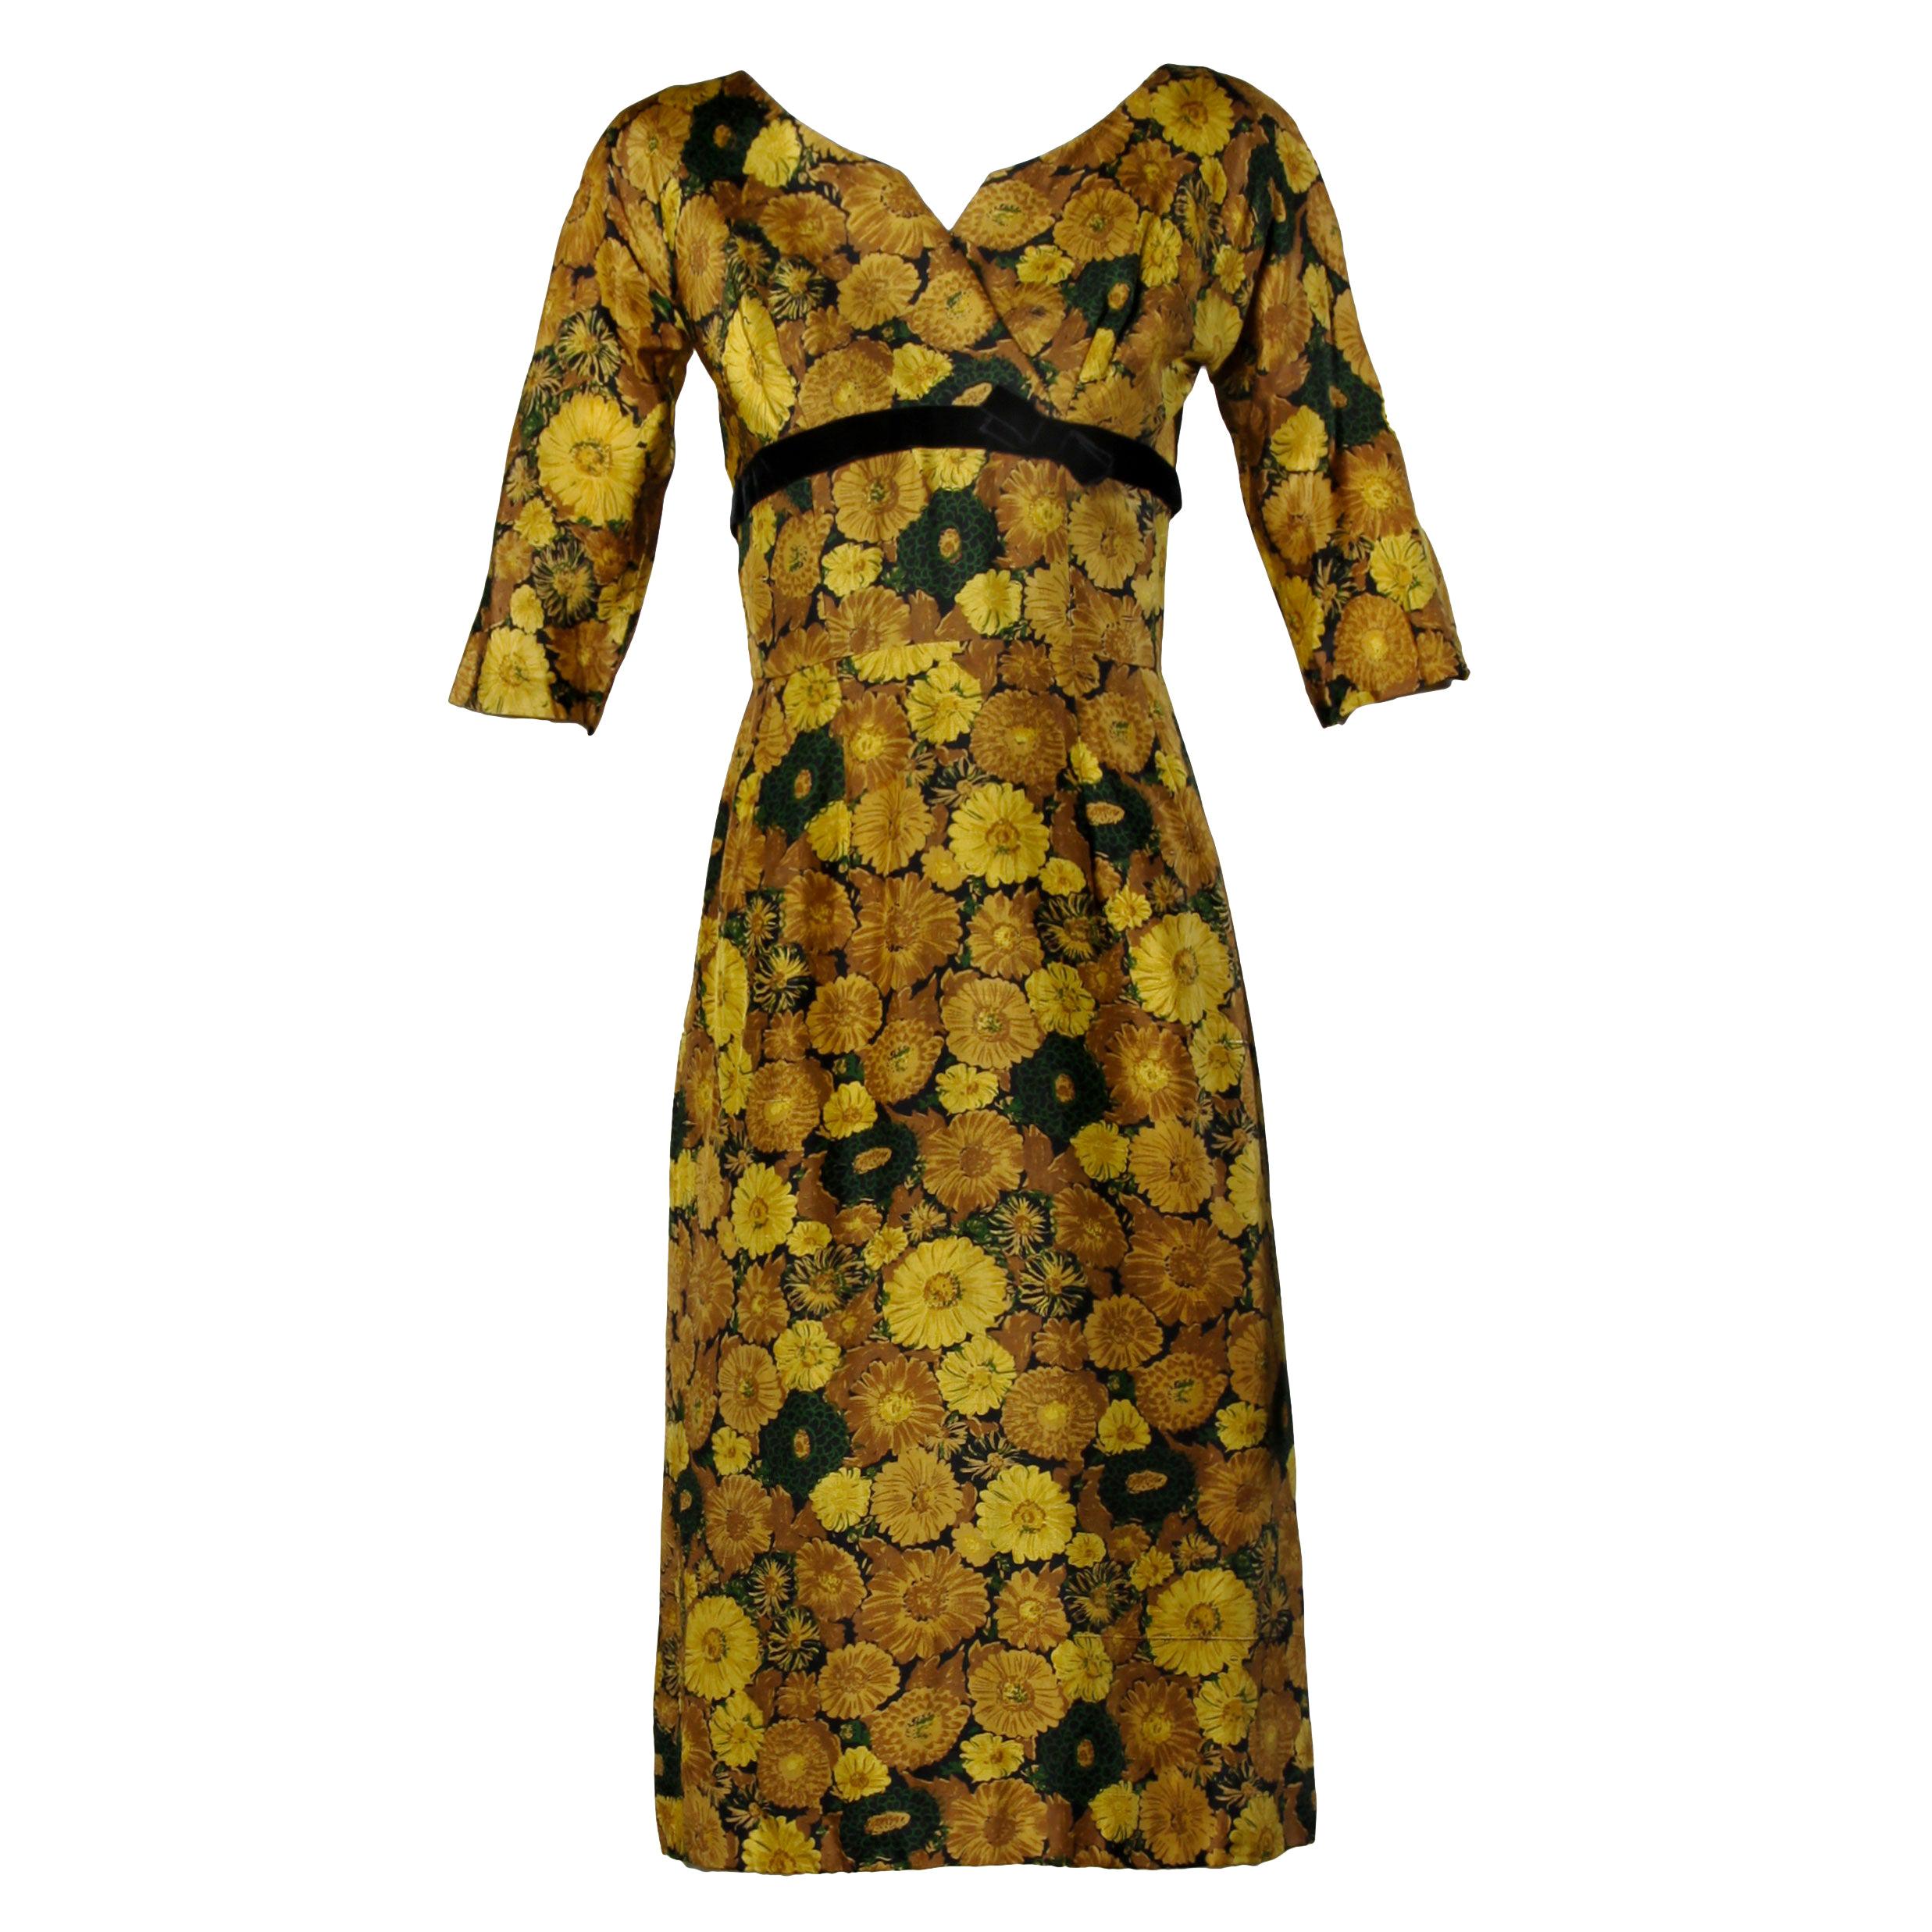 Robe de cocktail vintage en soie jaune à imprimé floral, années 1950-1960